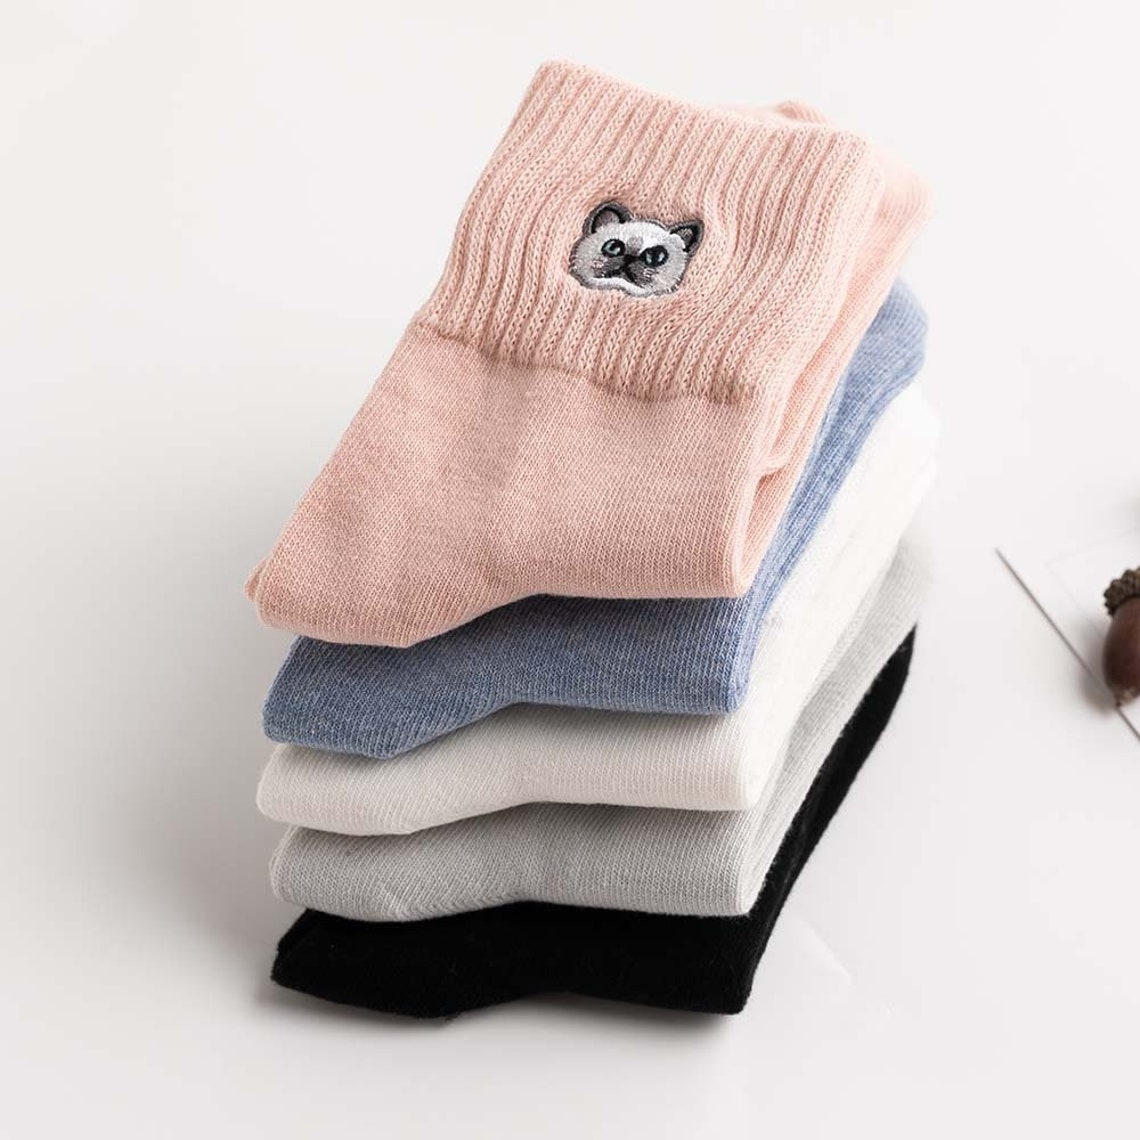 Cat embroidery socks women socks cat socks for gift gift | Etsy